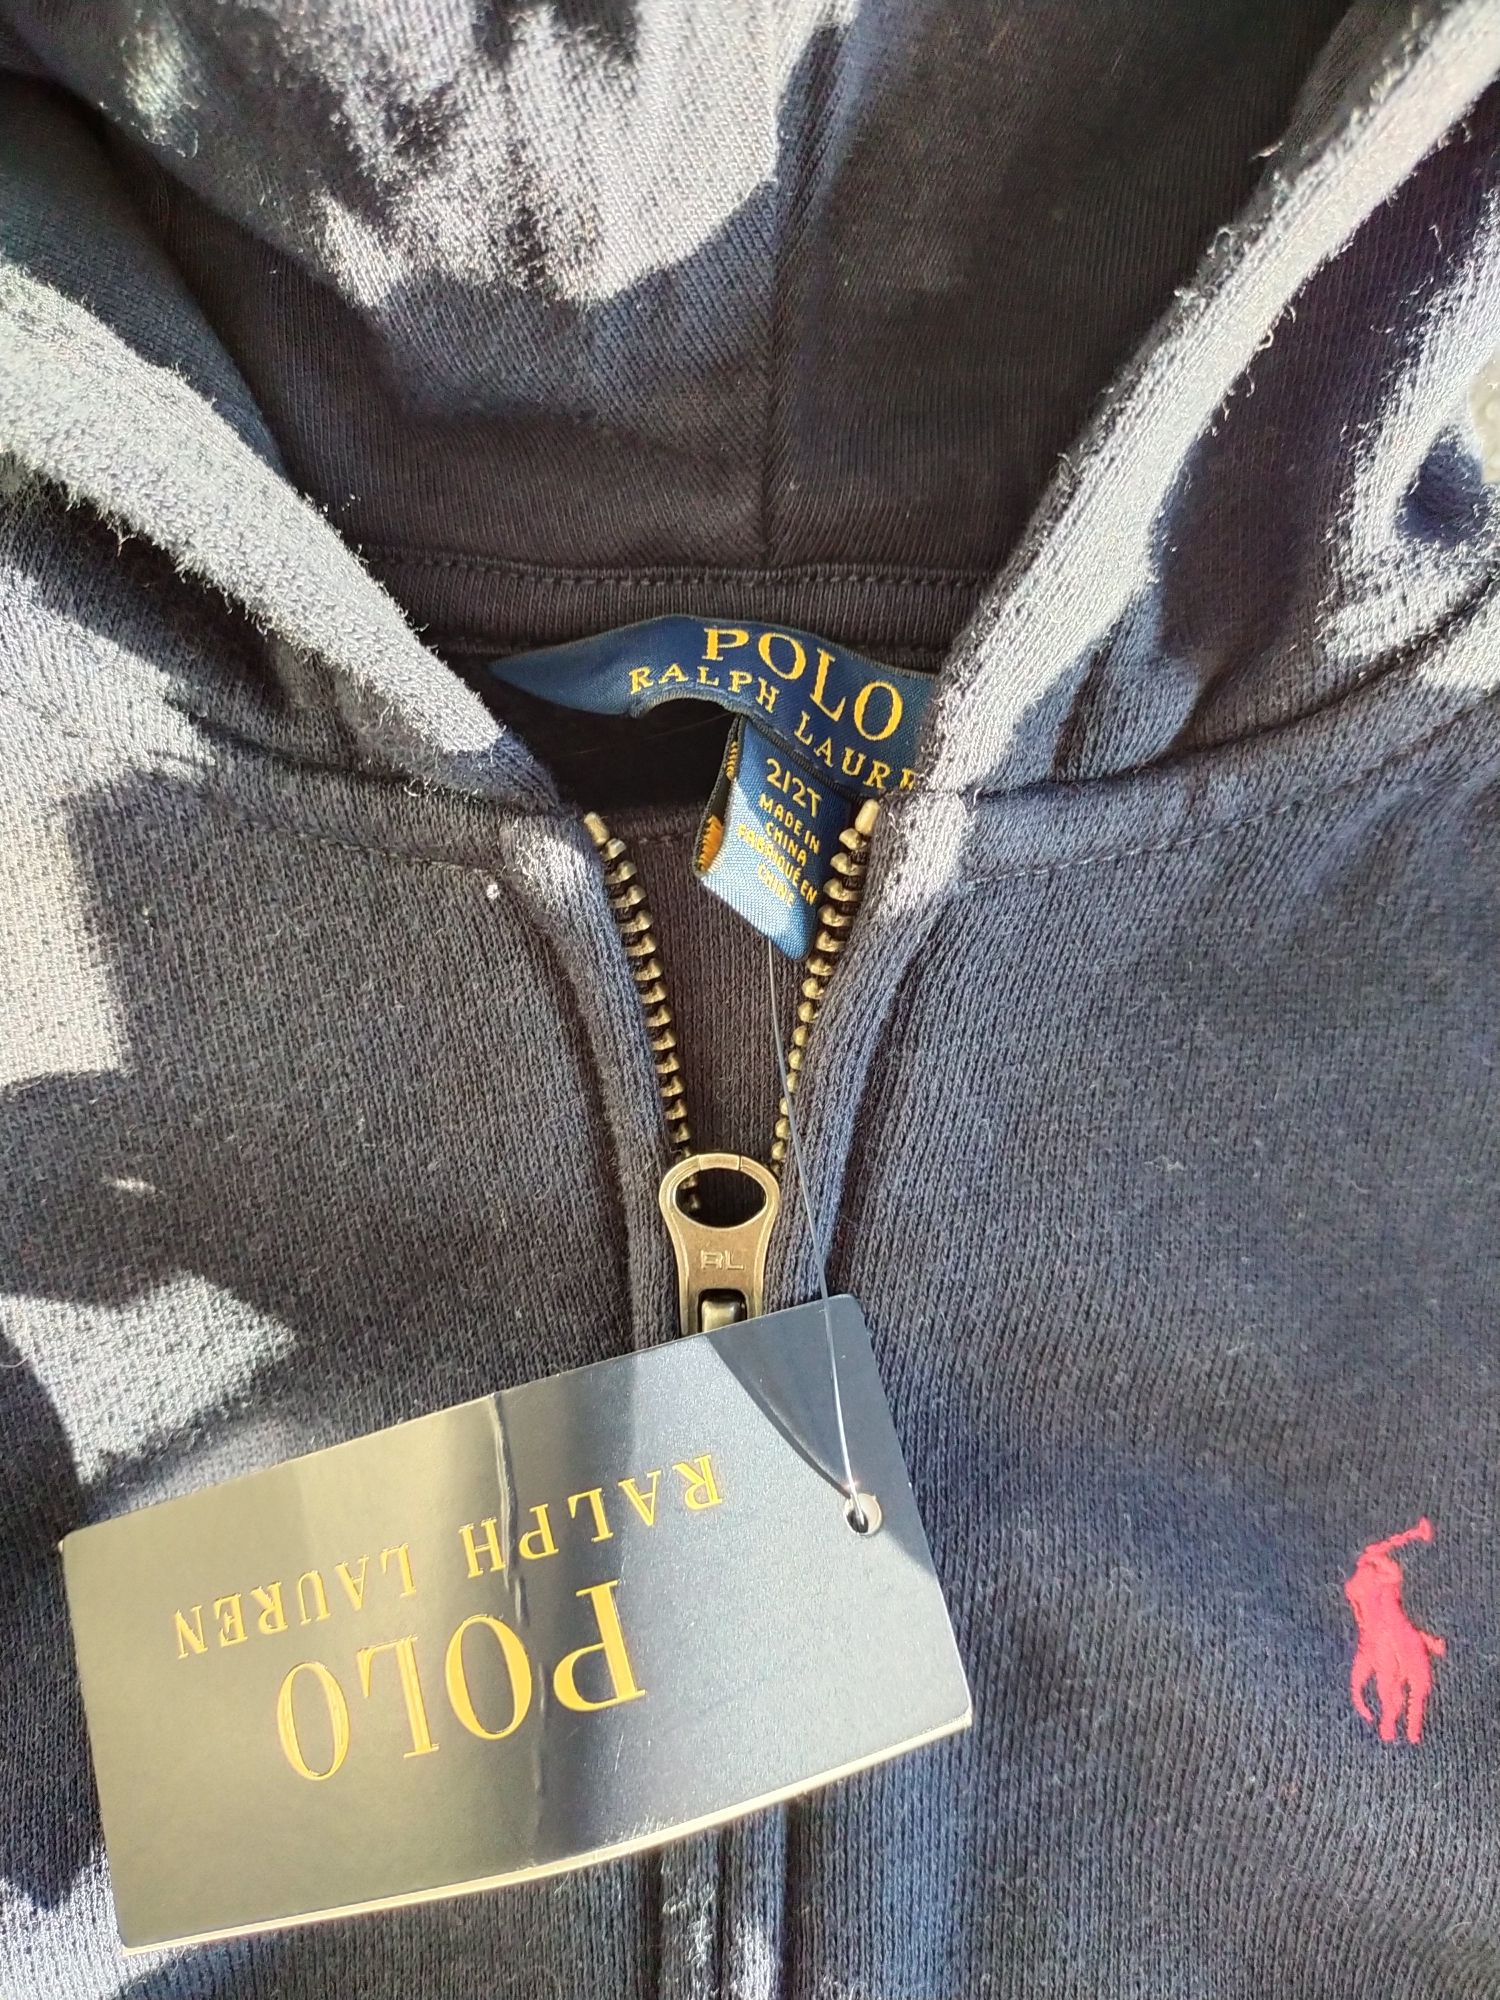 Bluza Polo Ralph Lauren, chłopięca, NOWA, granatowa, 2T